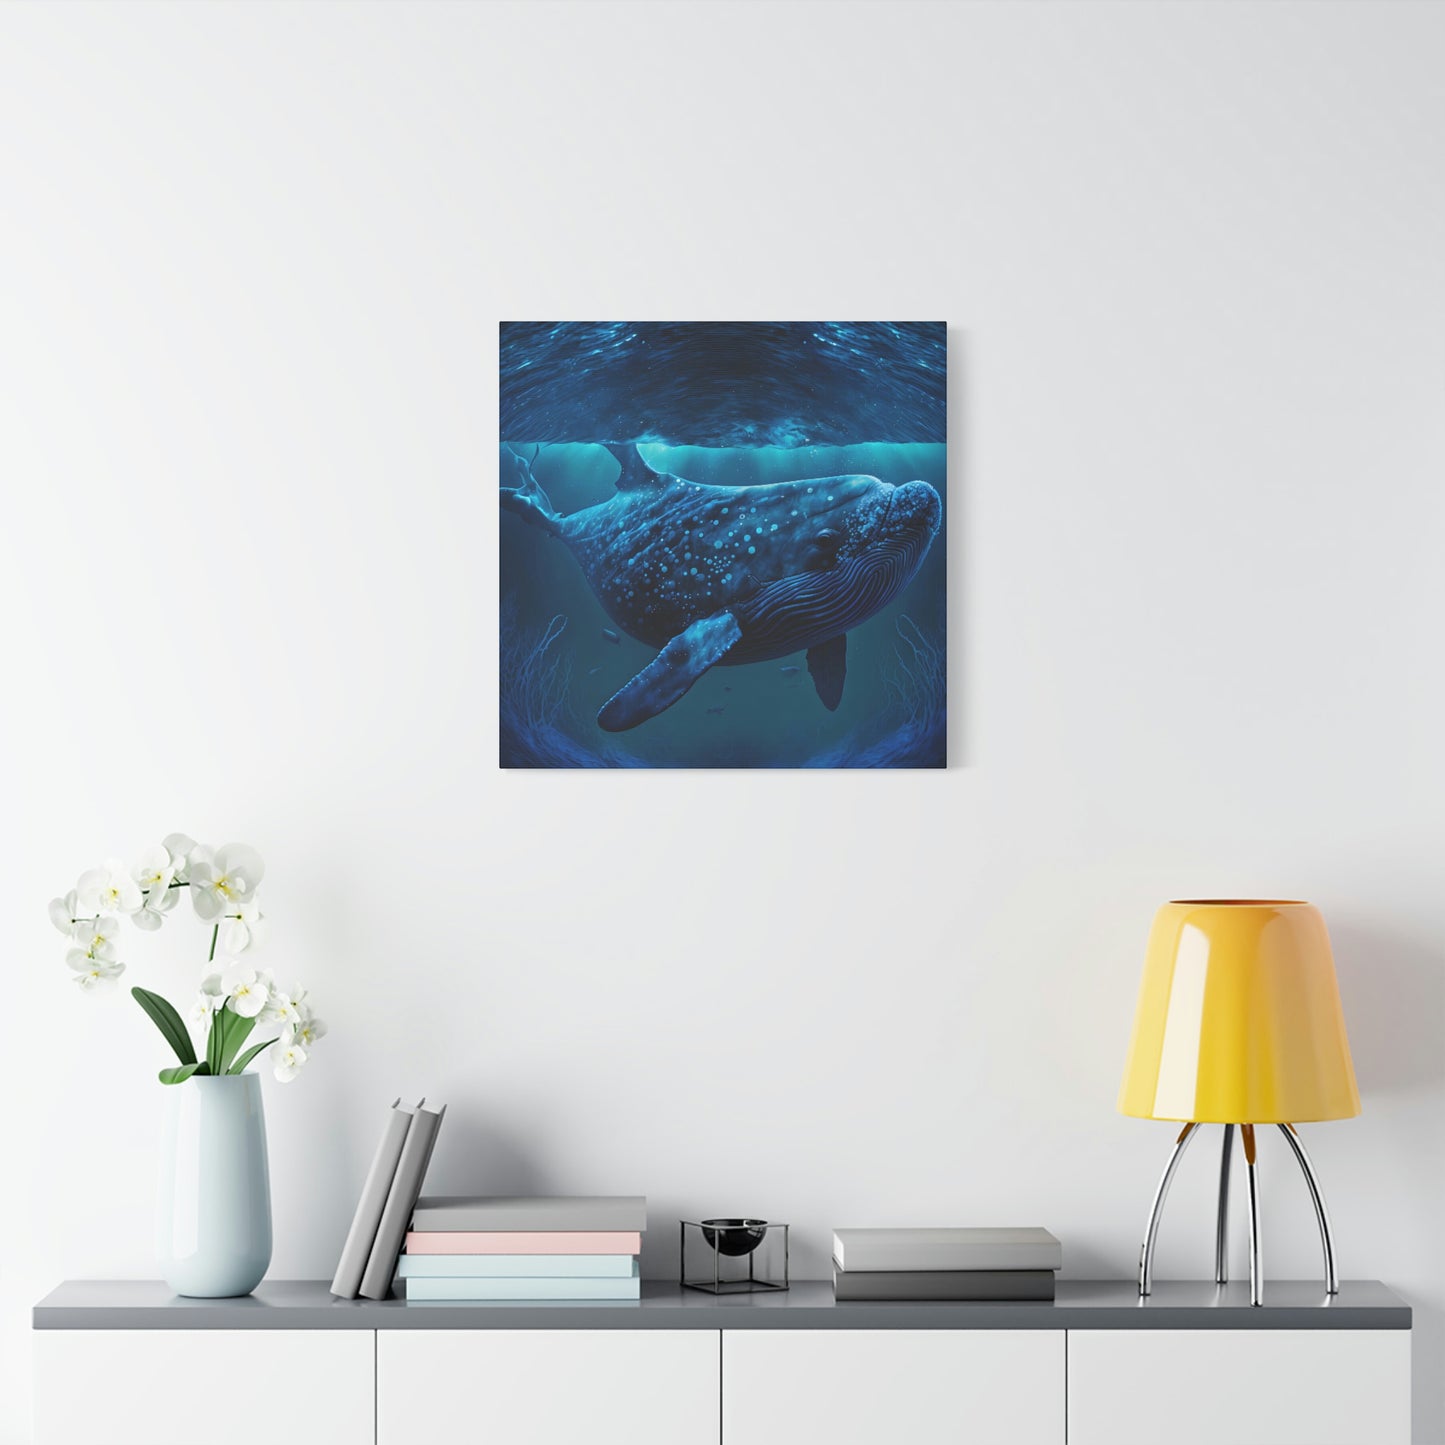 Blue Underwater - Matte Canvas, Stretched, 1.25"